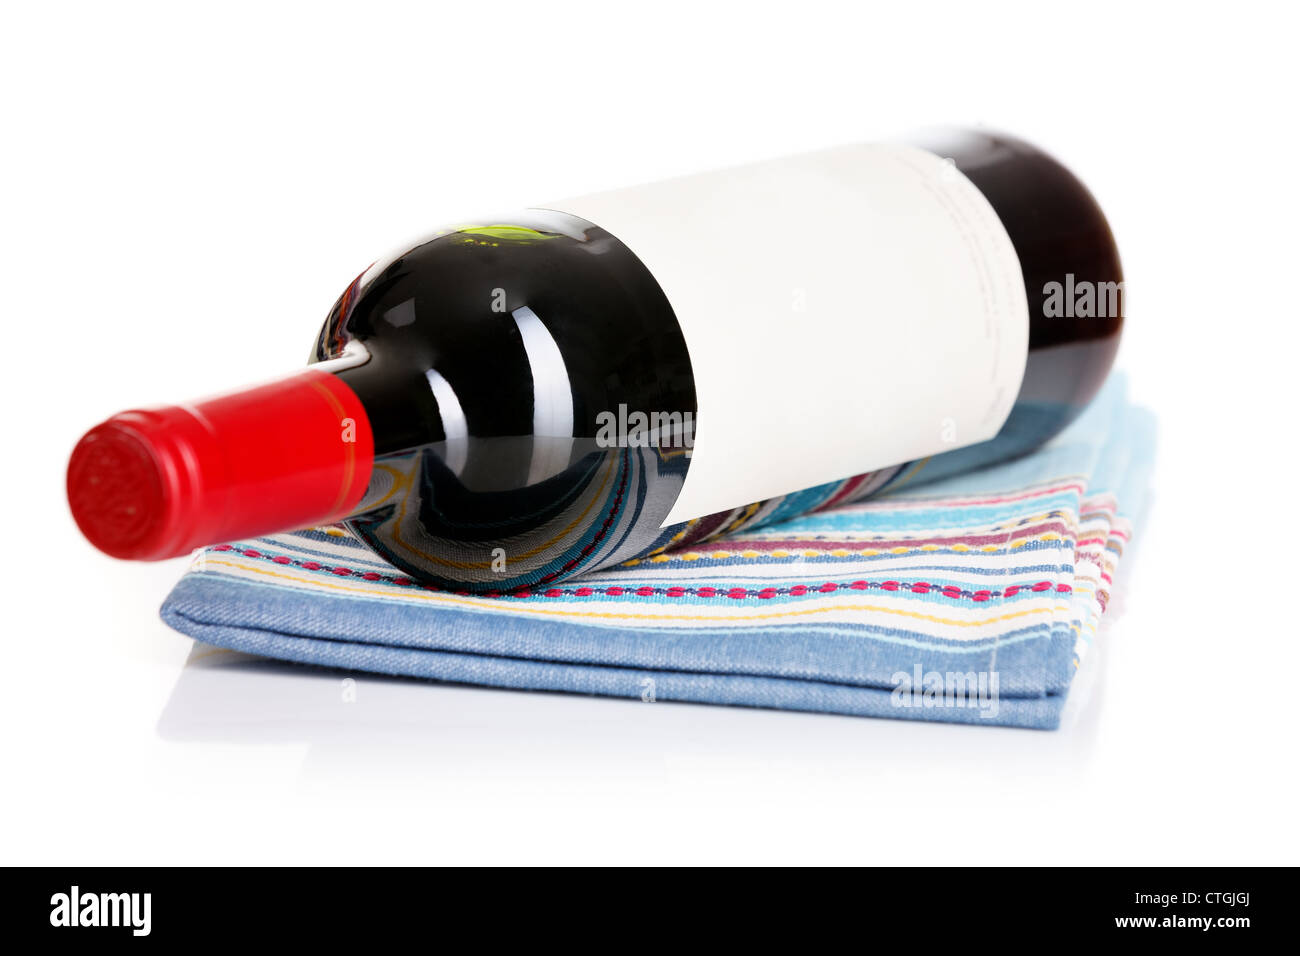 Bouteille de vin rouge à l'essuie-tout Banque D'Images